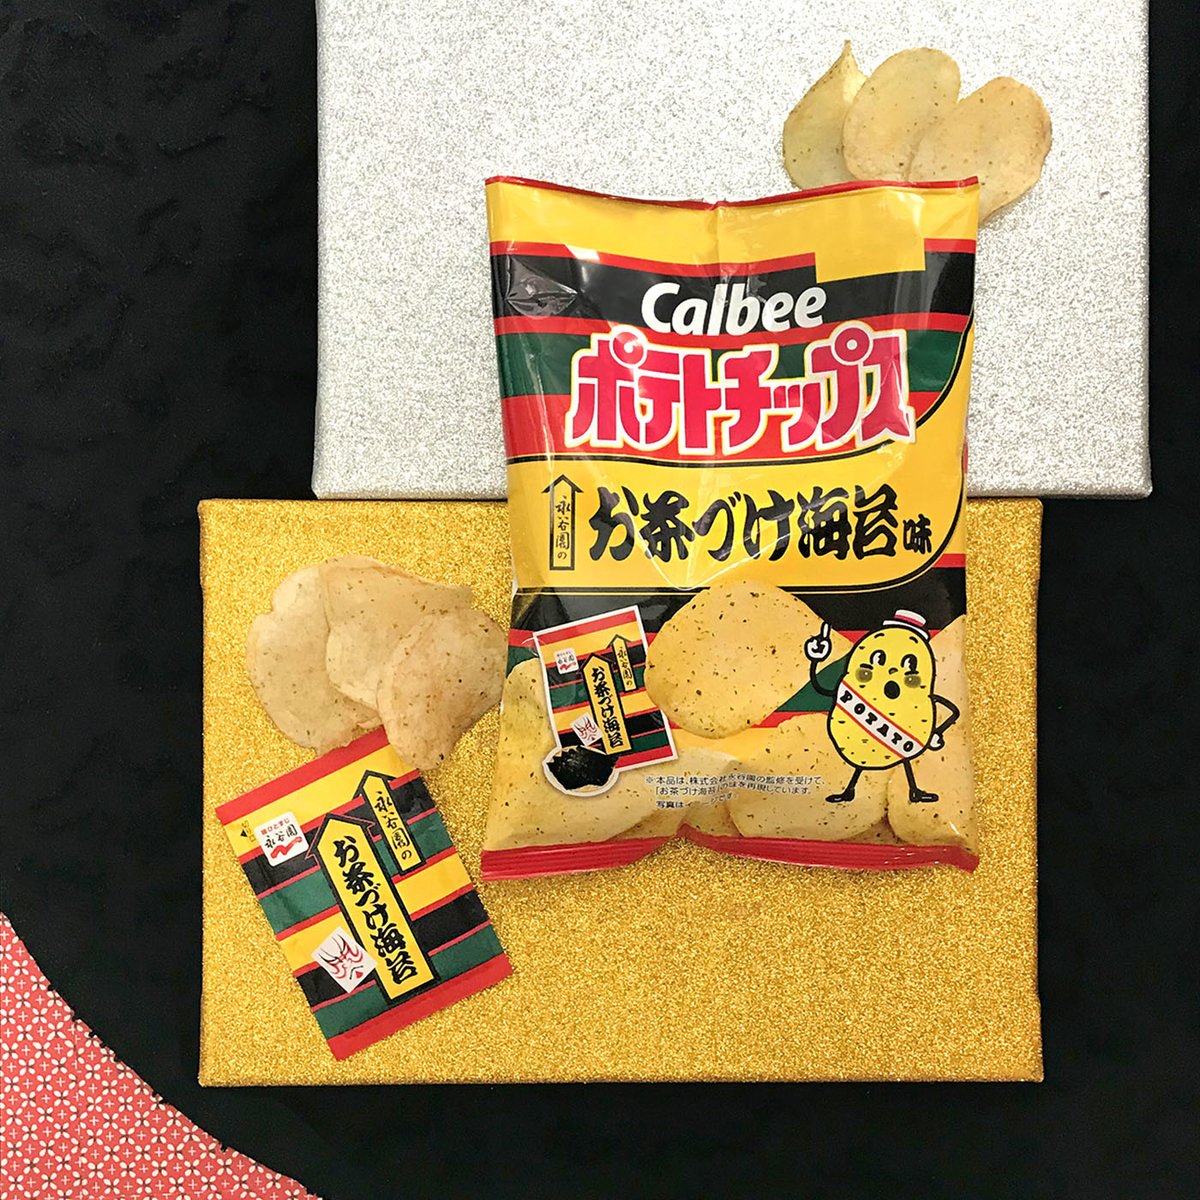 じゃがりこ 和菓子も 外国人が選んだ日本の美味しい コンビニお菓子 はどれ ページ 2 5 Trip Editor